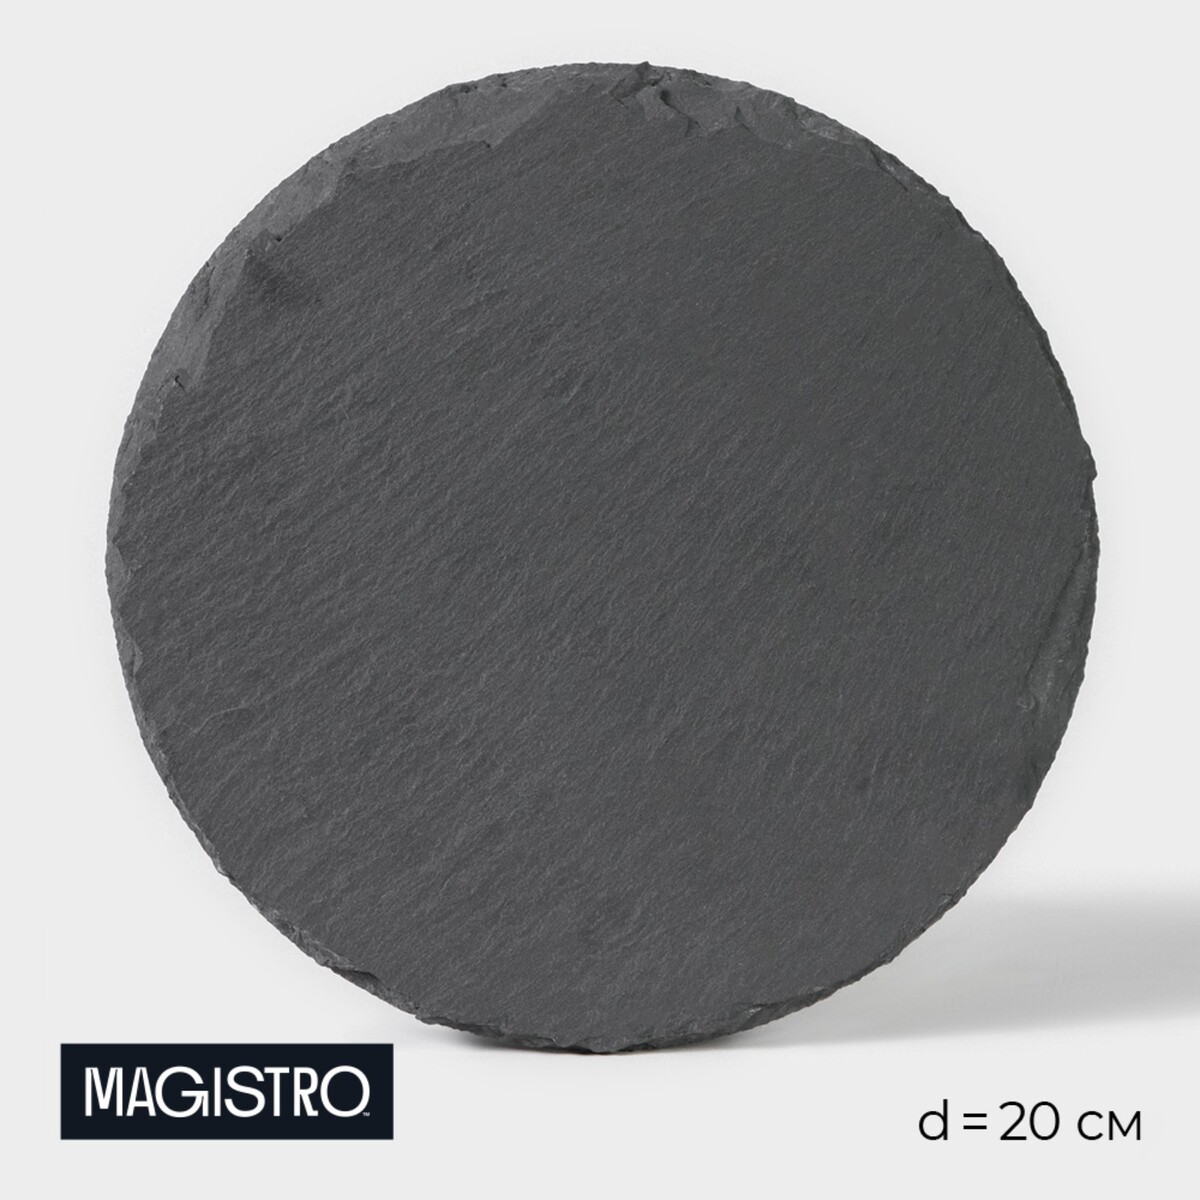 Доска для подачи из сланца magistro valley, d=20 см доска для подачи из сланца magistro valley 40×12 см